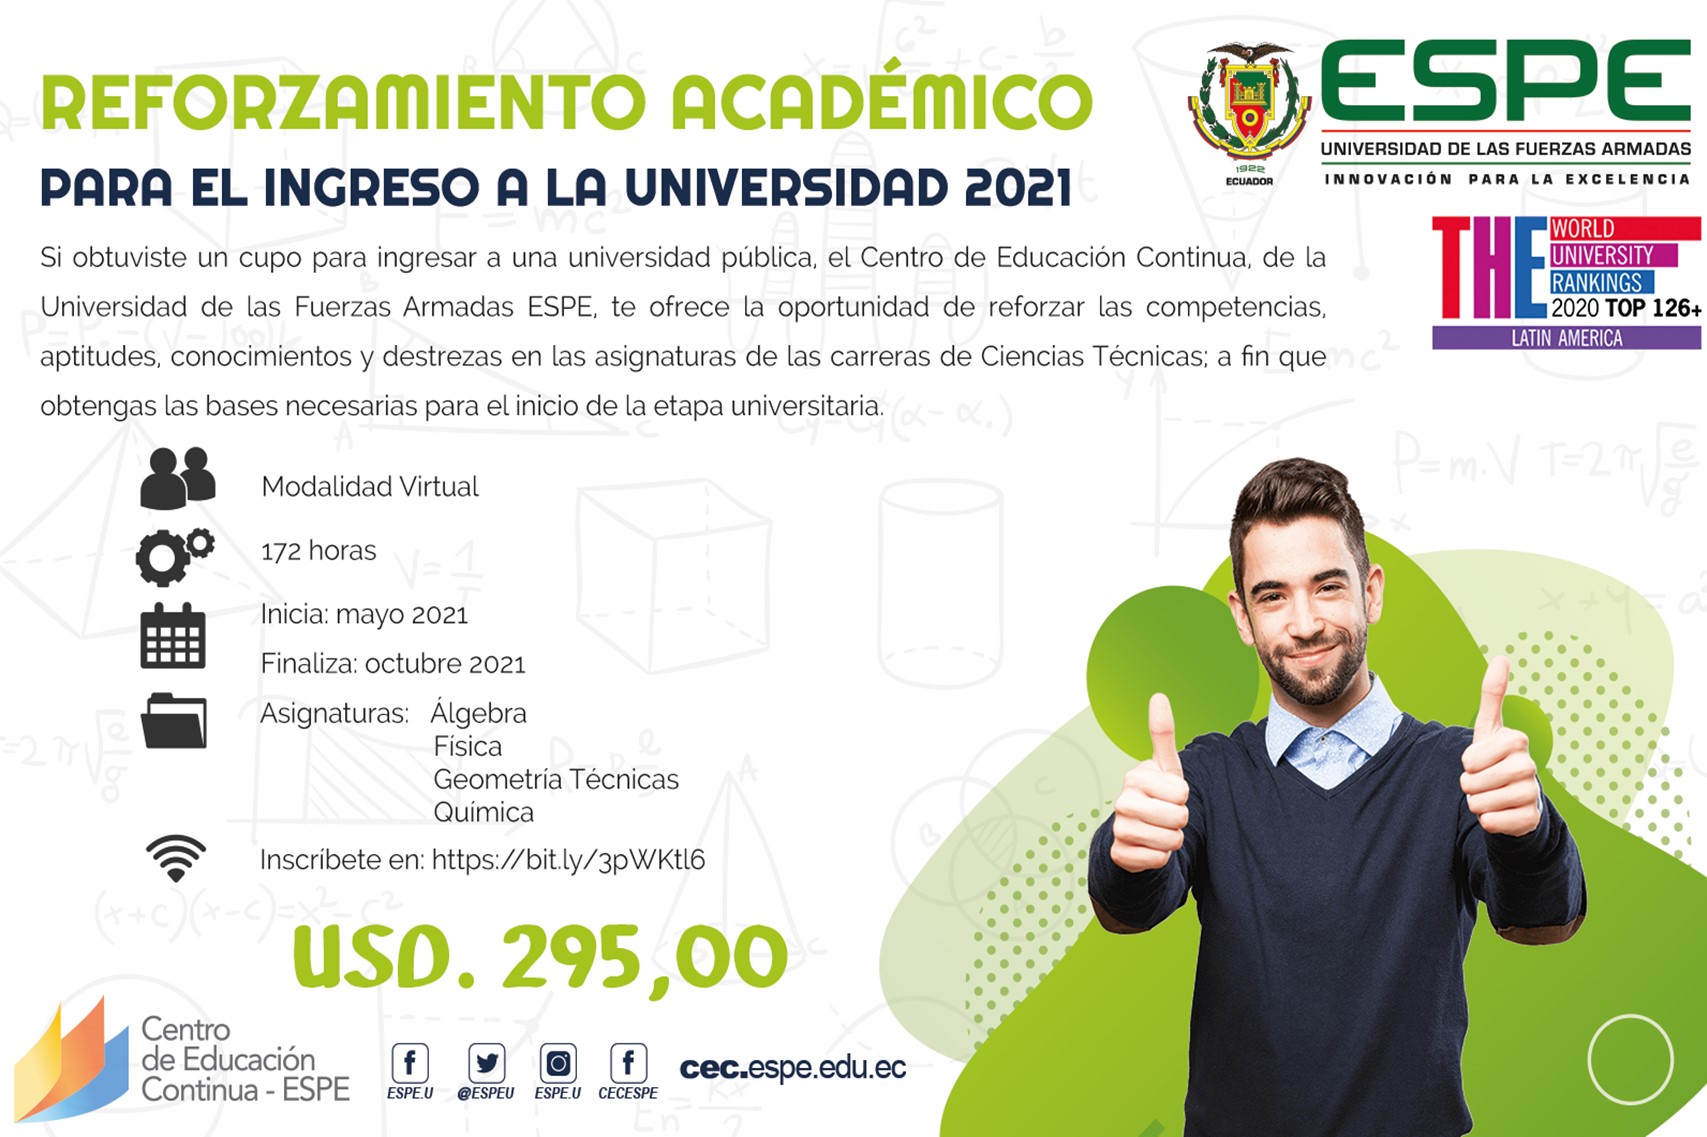 Reforzamiento académico para el ingreso a la universidad 2021-Ciencias Técnicas, ESPE